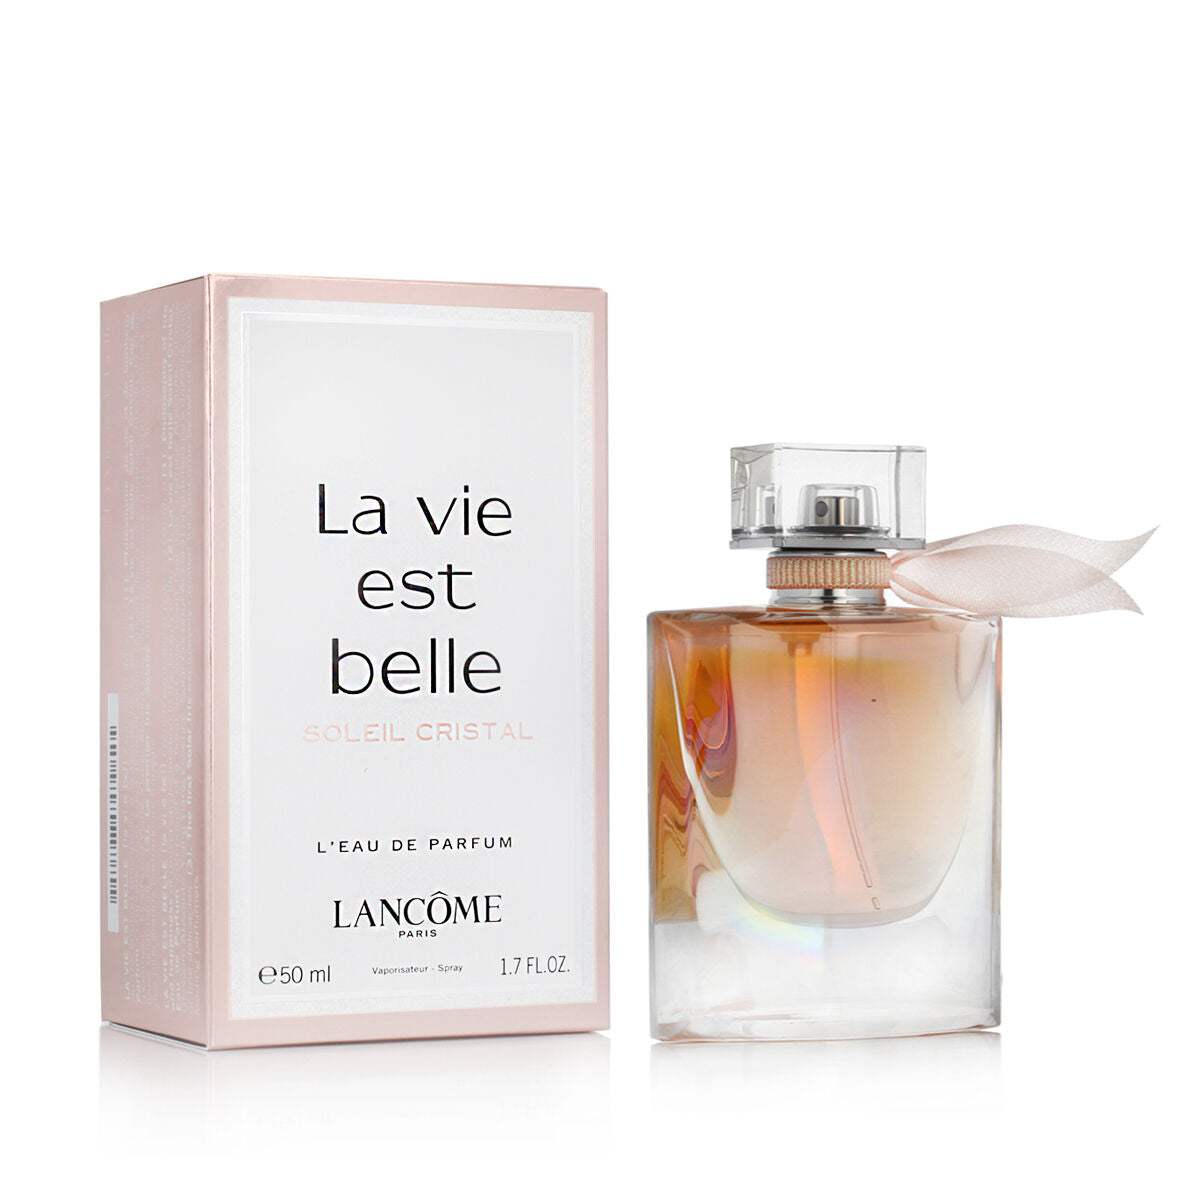 Parfum Homme Lancôme LA VIE EST BELLE La Vie Est Belle Soleil Cristal 50 ml - Lancôme - Jardin D'Eyden - jardindeyden.fr